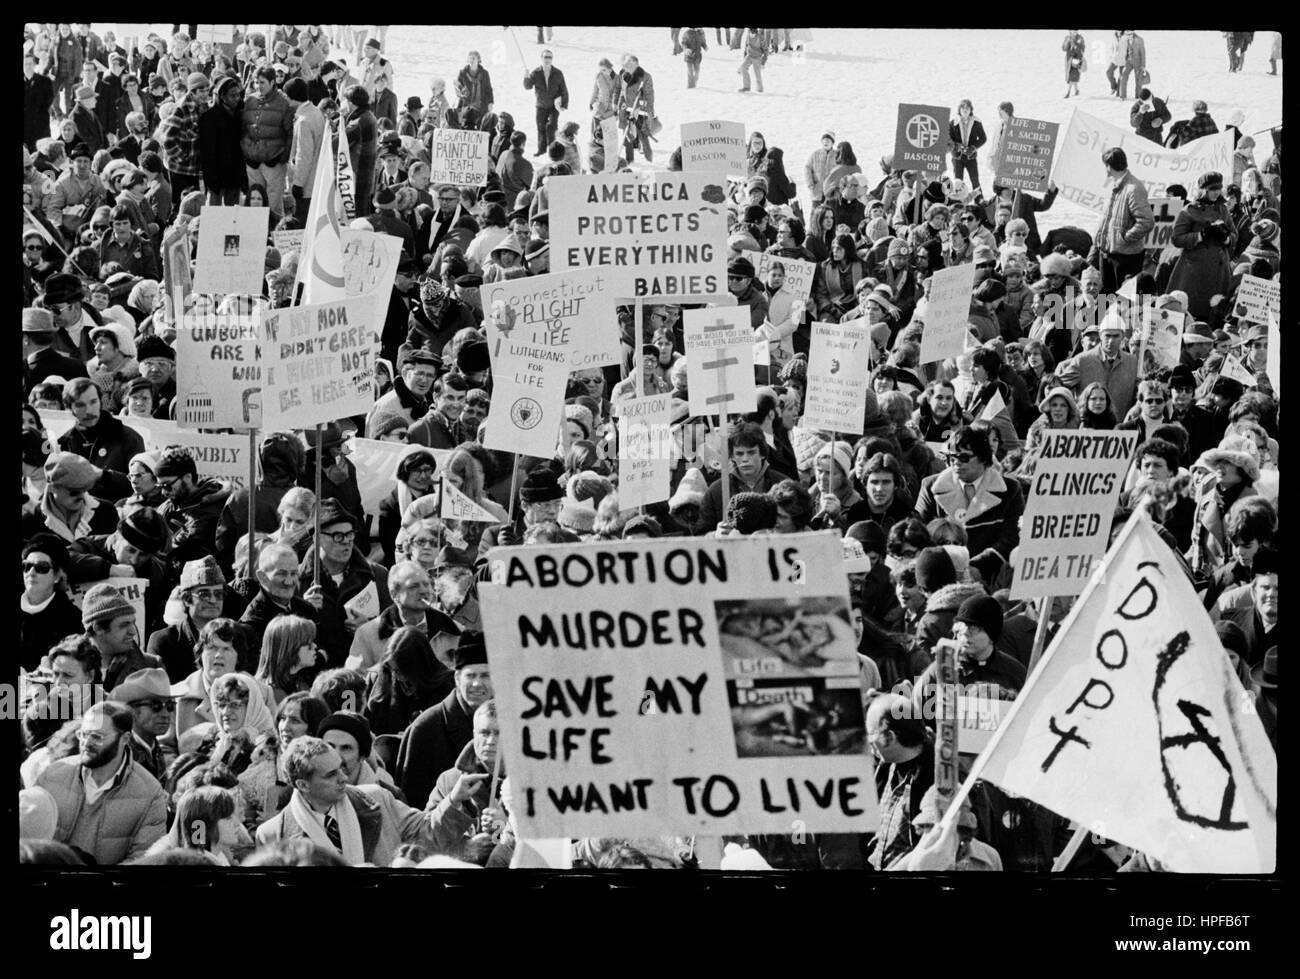 "Diritto alla vita" di dimostrazione con striscioni e cartelloni presso la Casa Bianca e U S Capitol, Washington DC, 23/01/1978. Foto di Thomas O'Halloran Foto Stock